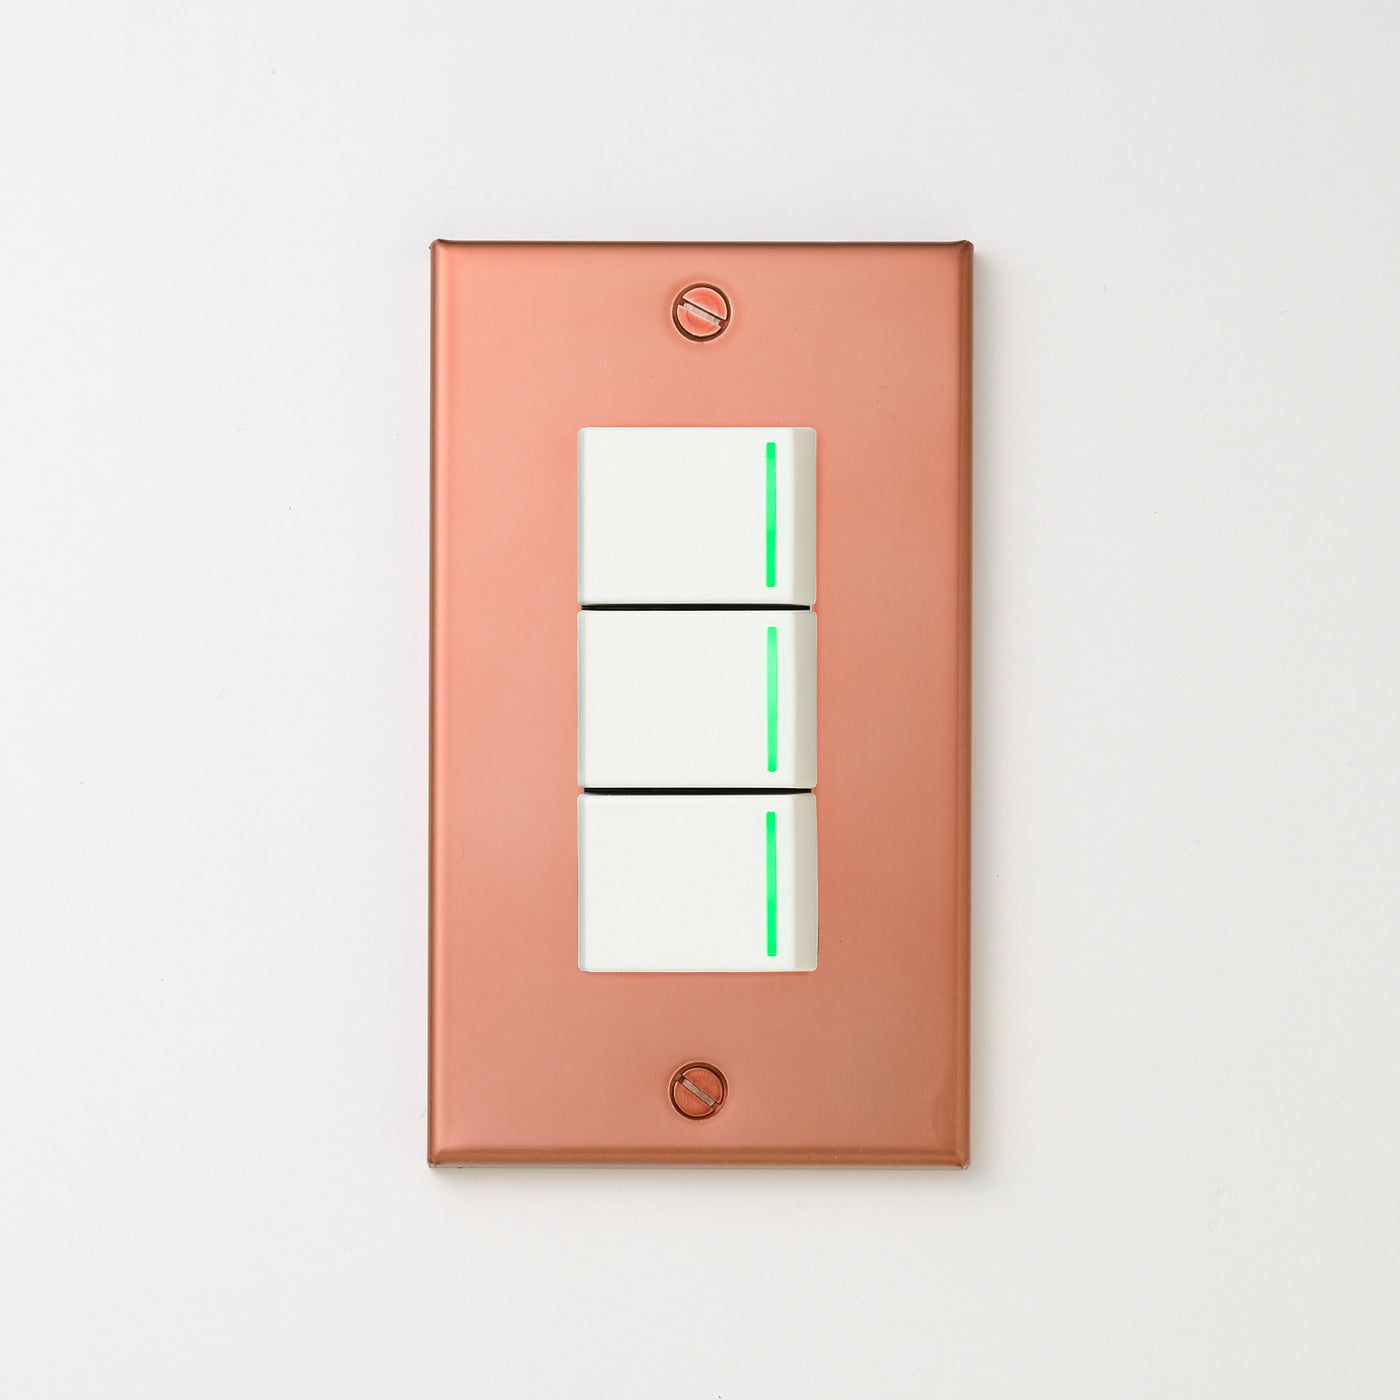 銅色（マット） プレート <br>+ NK 片切、3路ガイドランプ（グリーン）スイッチトリプル  ホワイト